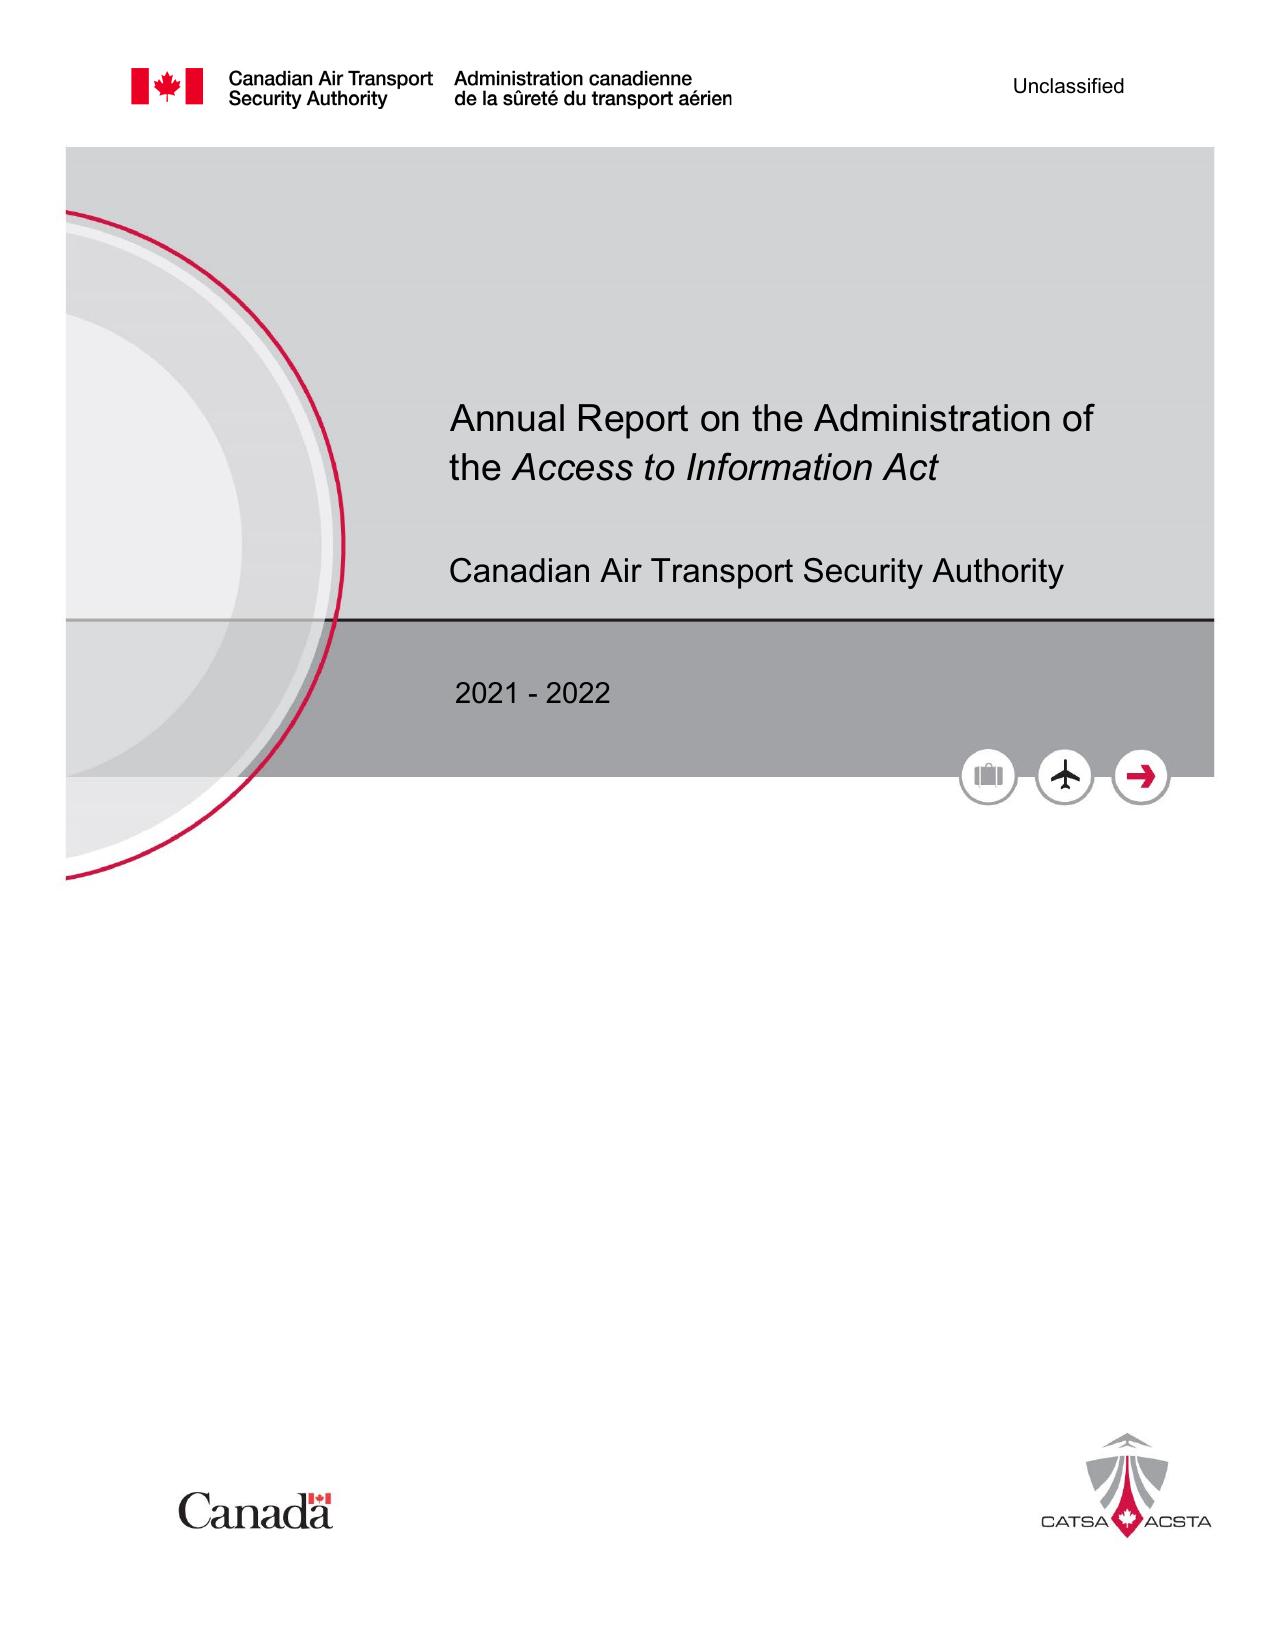 GC 2022 Annual Report